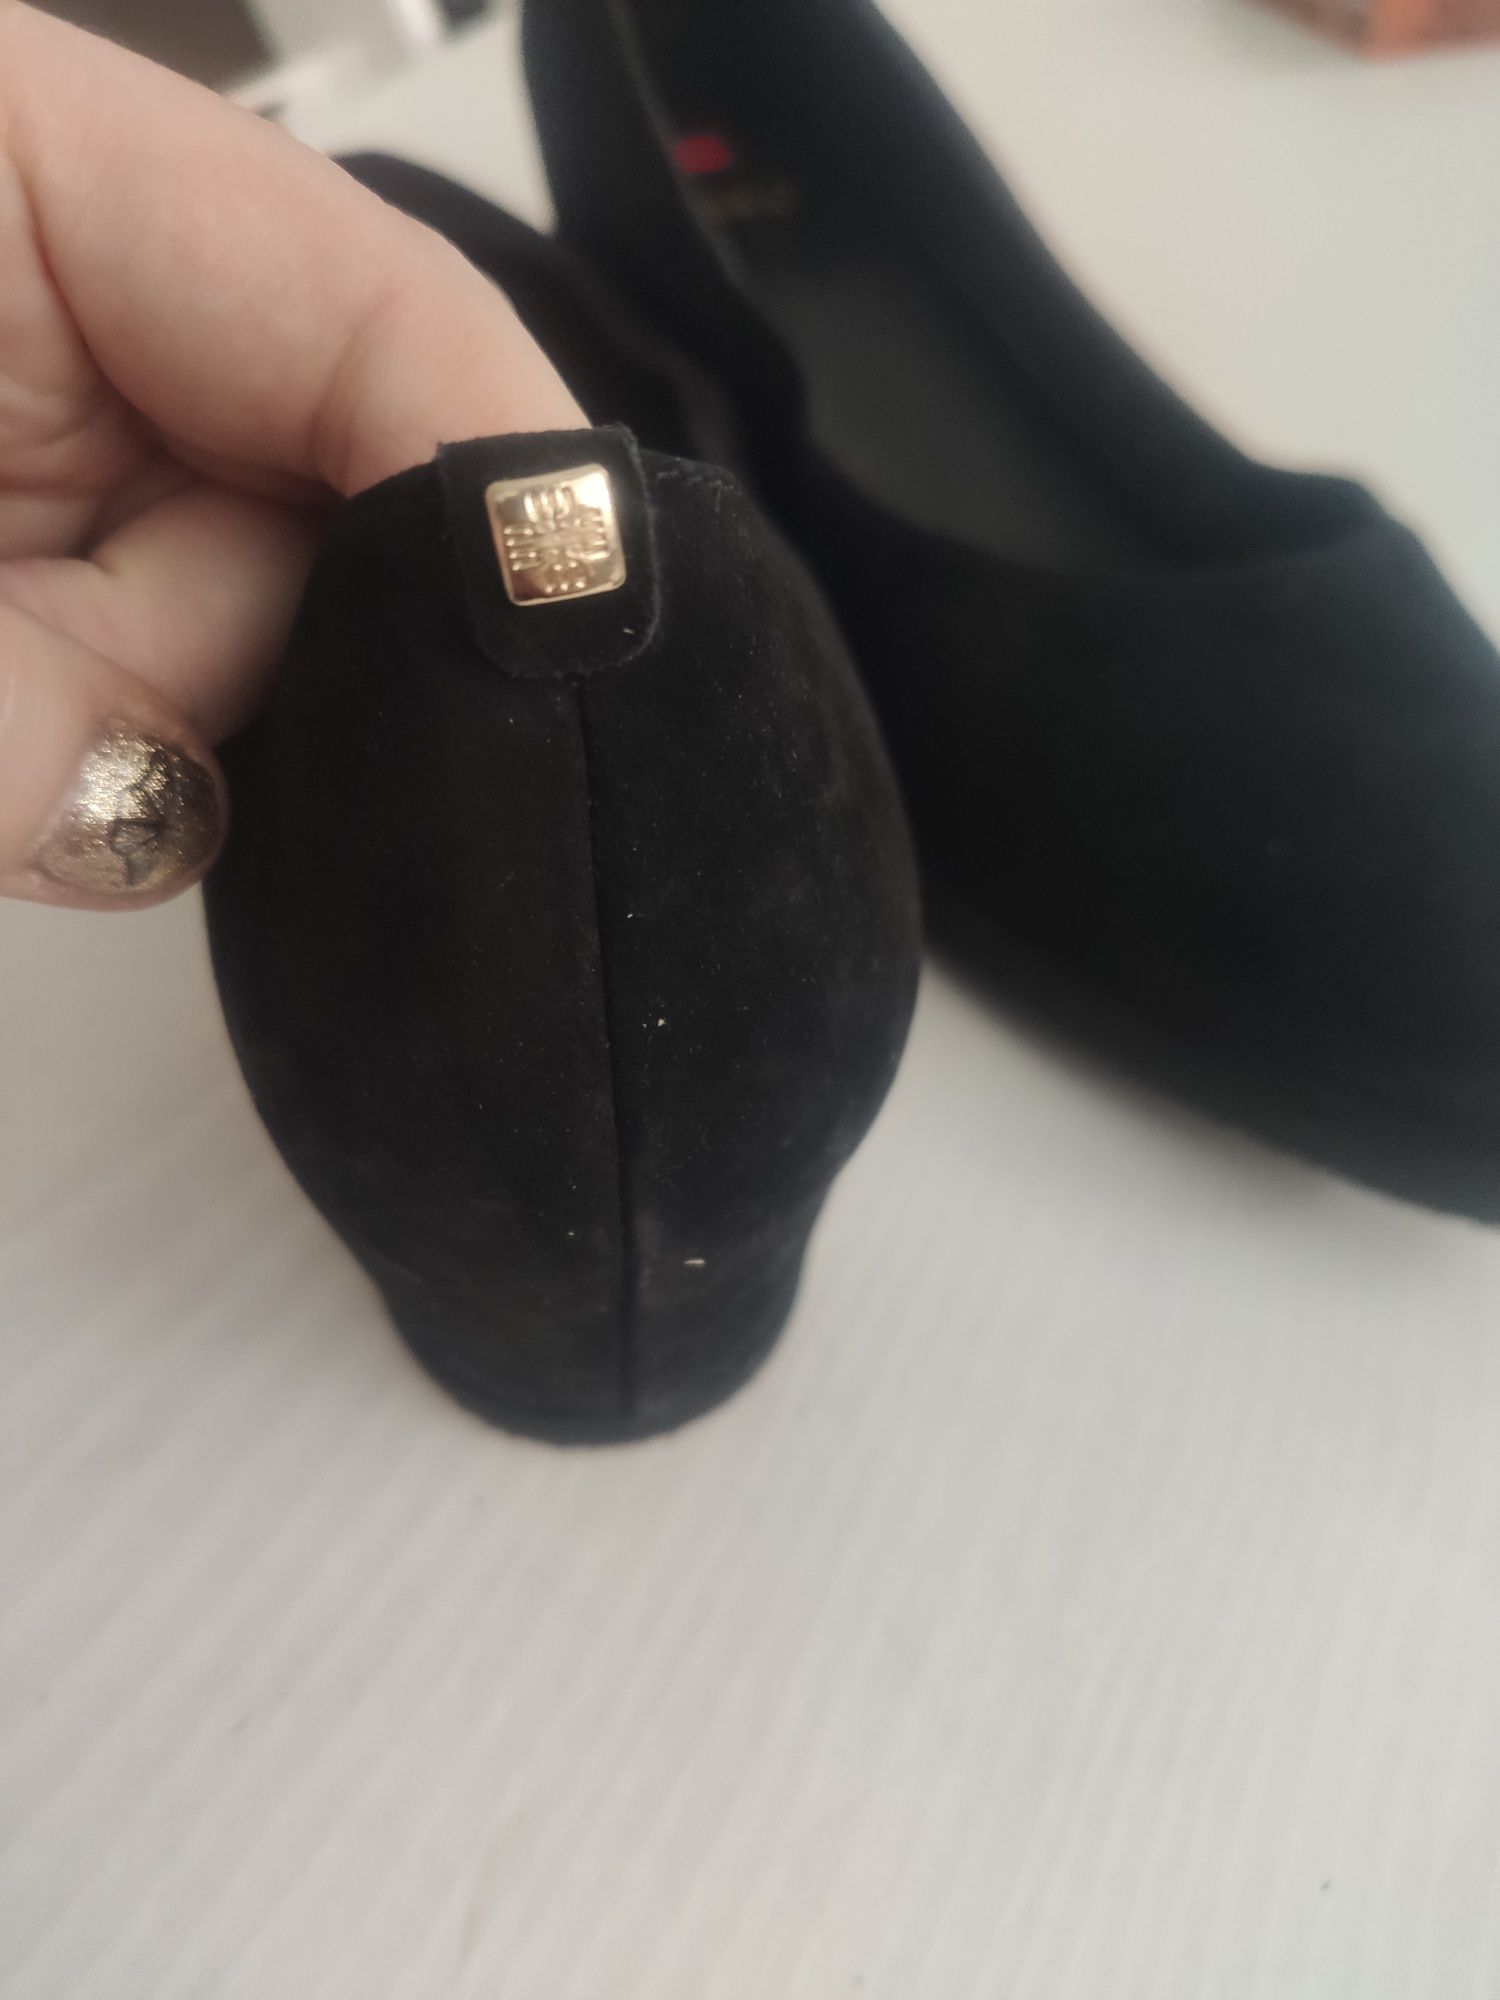 Nowe czarne buty damskie HOGL czarne baleriny r.44 wkładka 29cm